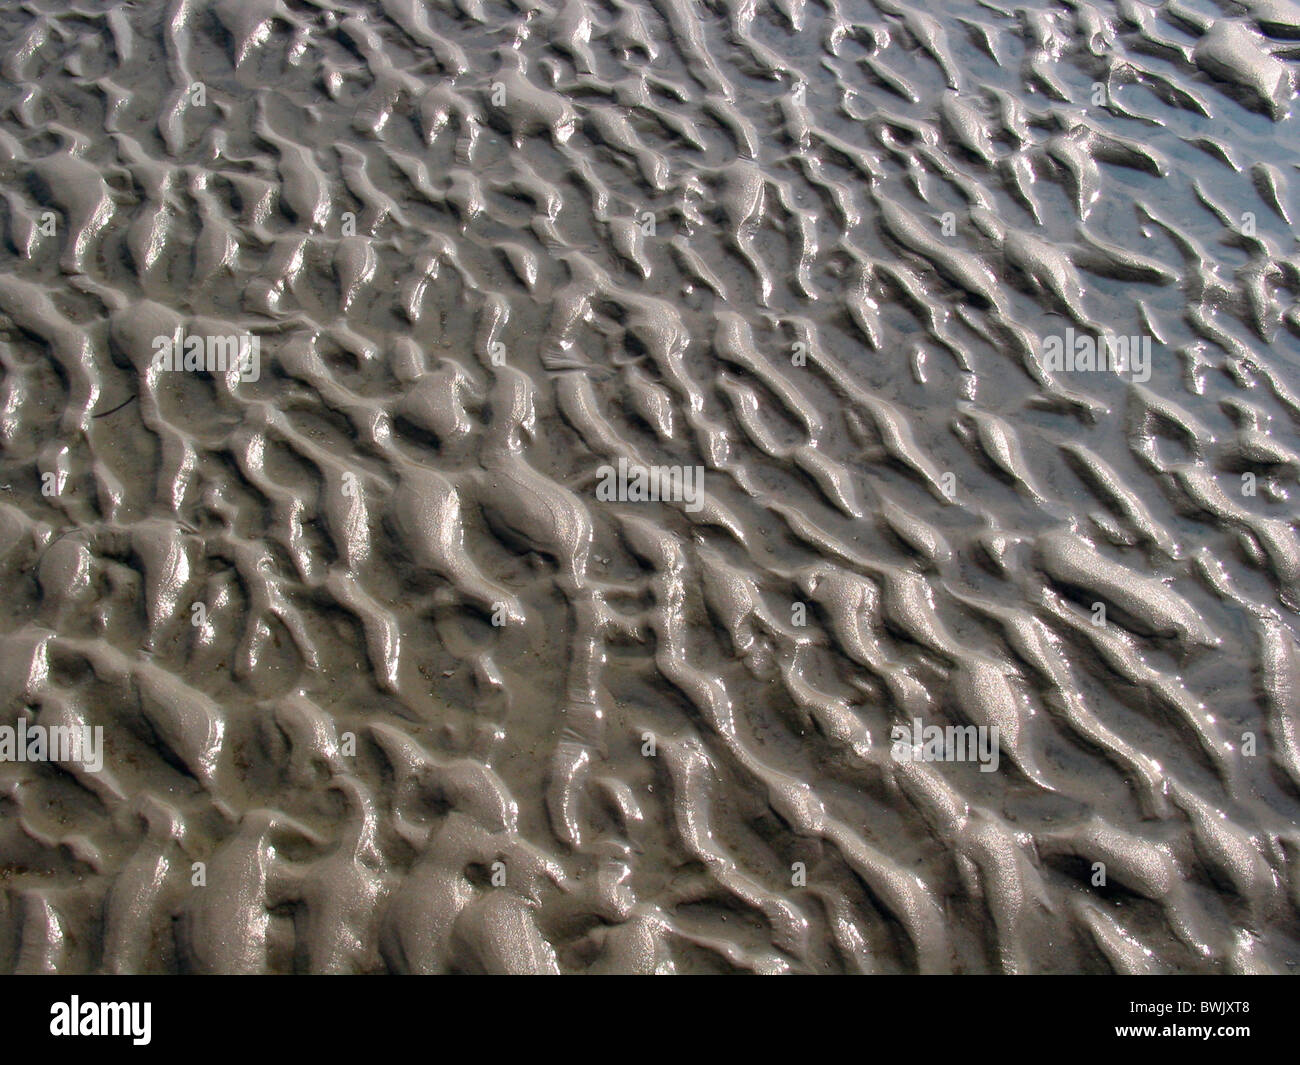 mud flats sea watt sand mud slime sludge structure water tides North Sea Saint Peter-Ording national park Stock Photo